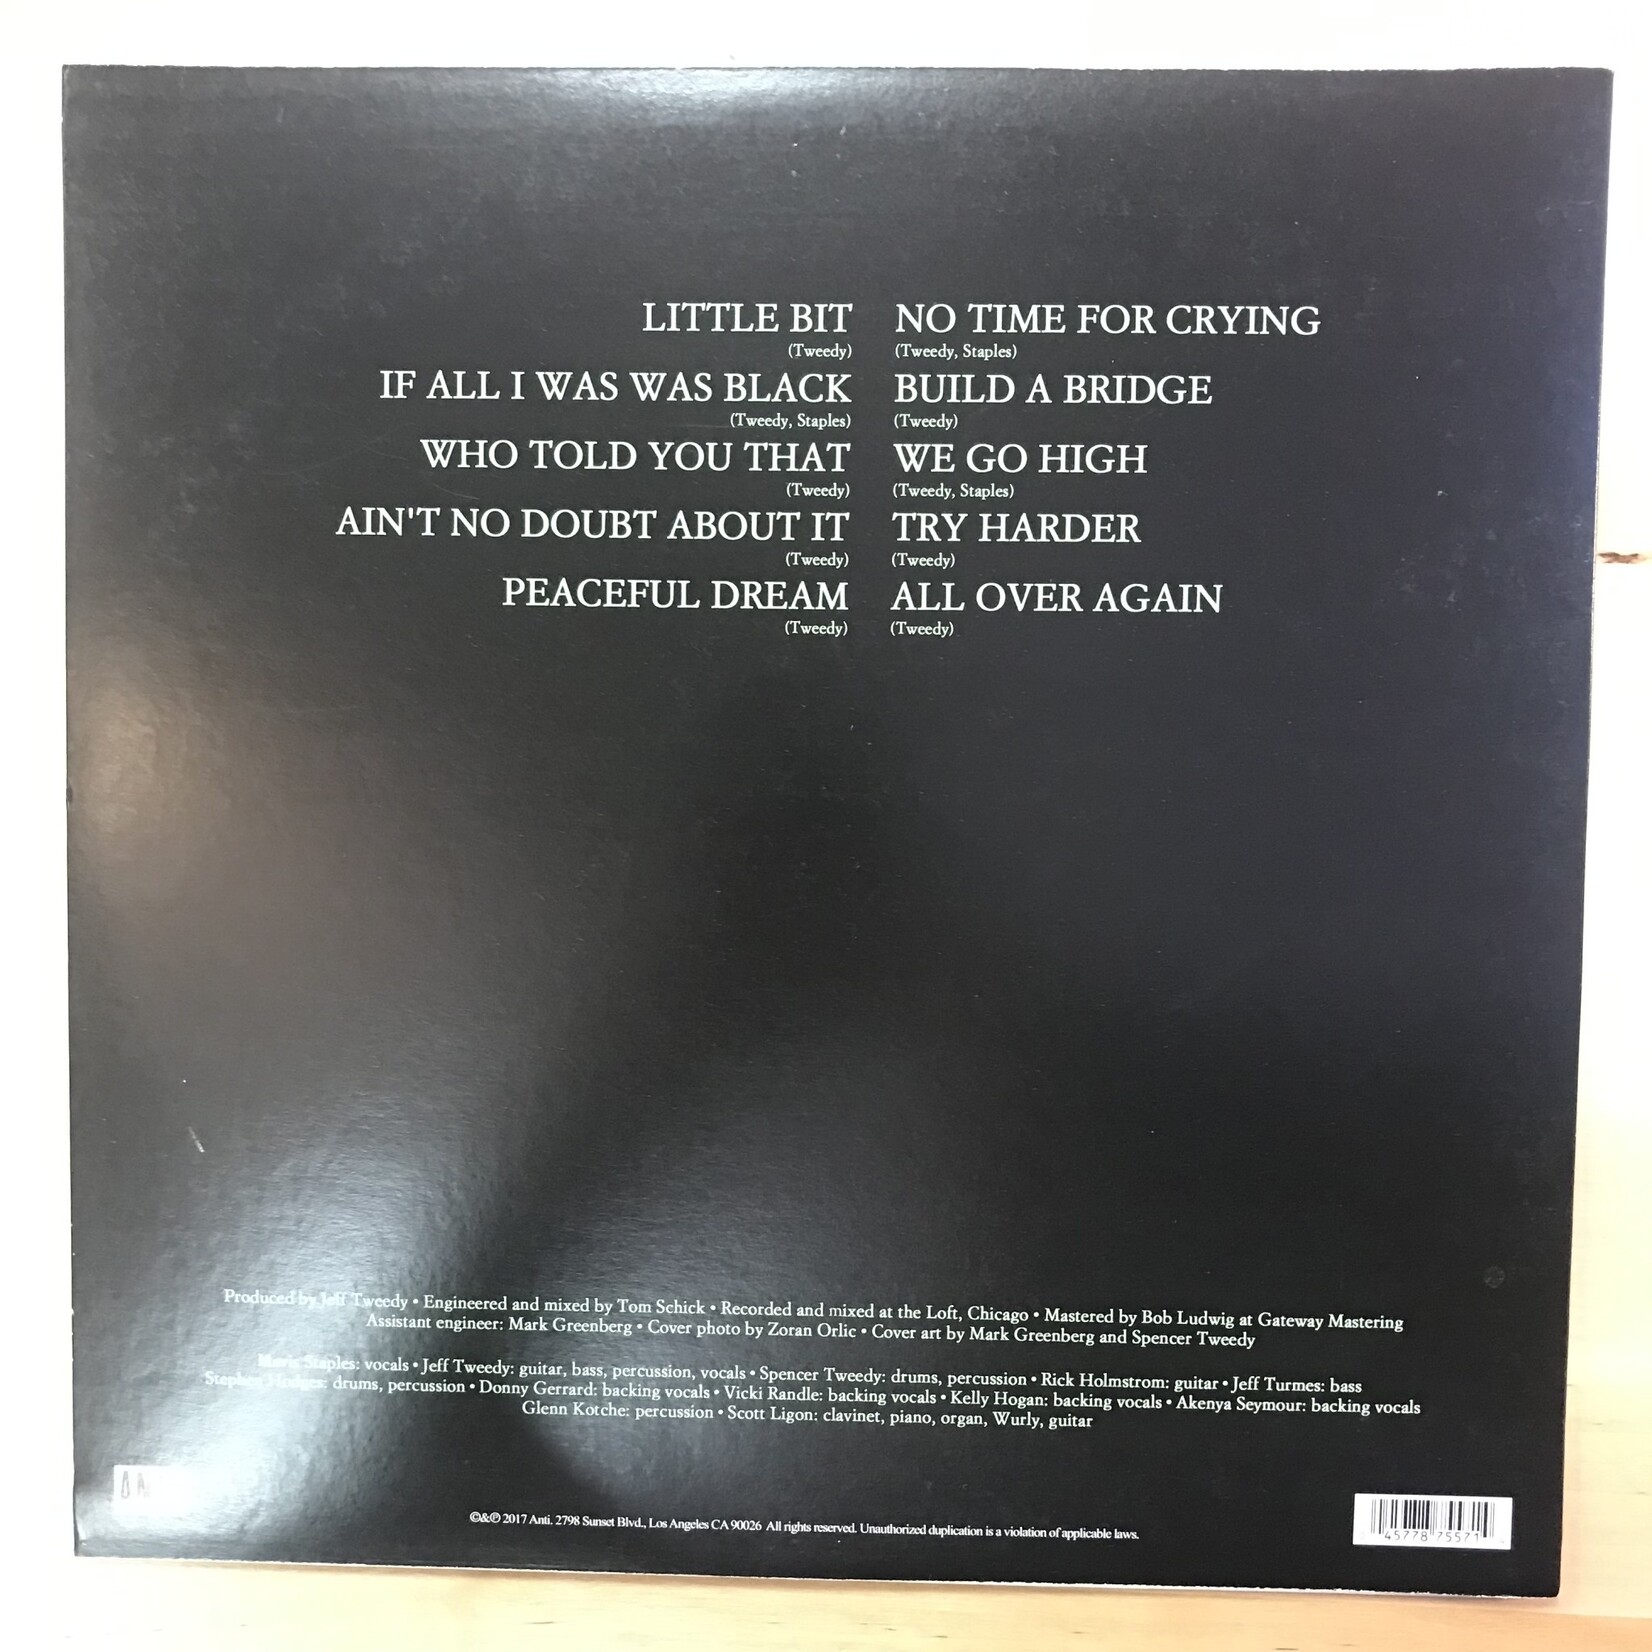 Mavis Staples - If All I Was Was Black - 87557 1 - Vinyl LP (USED)